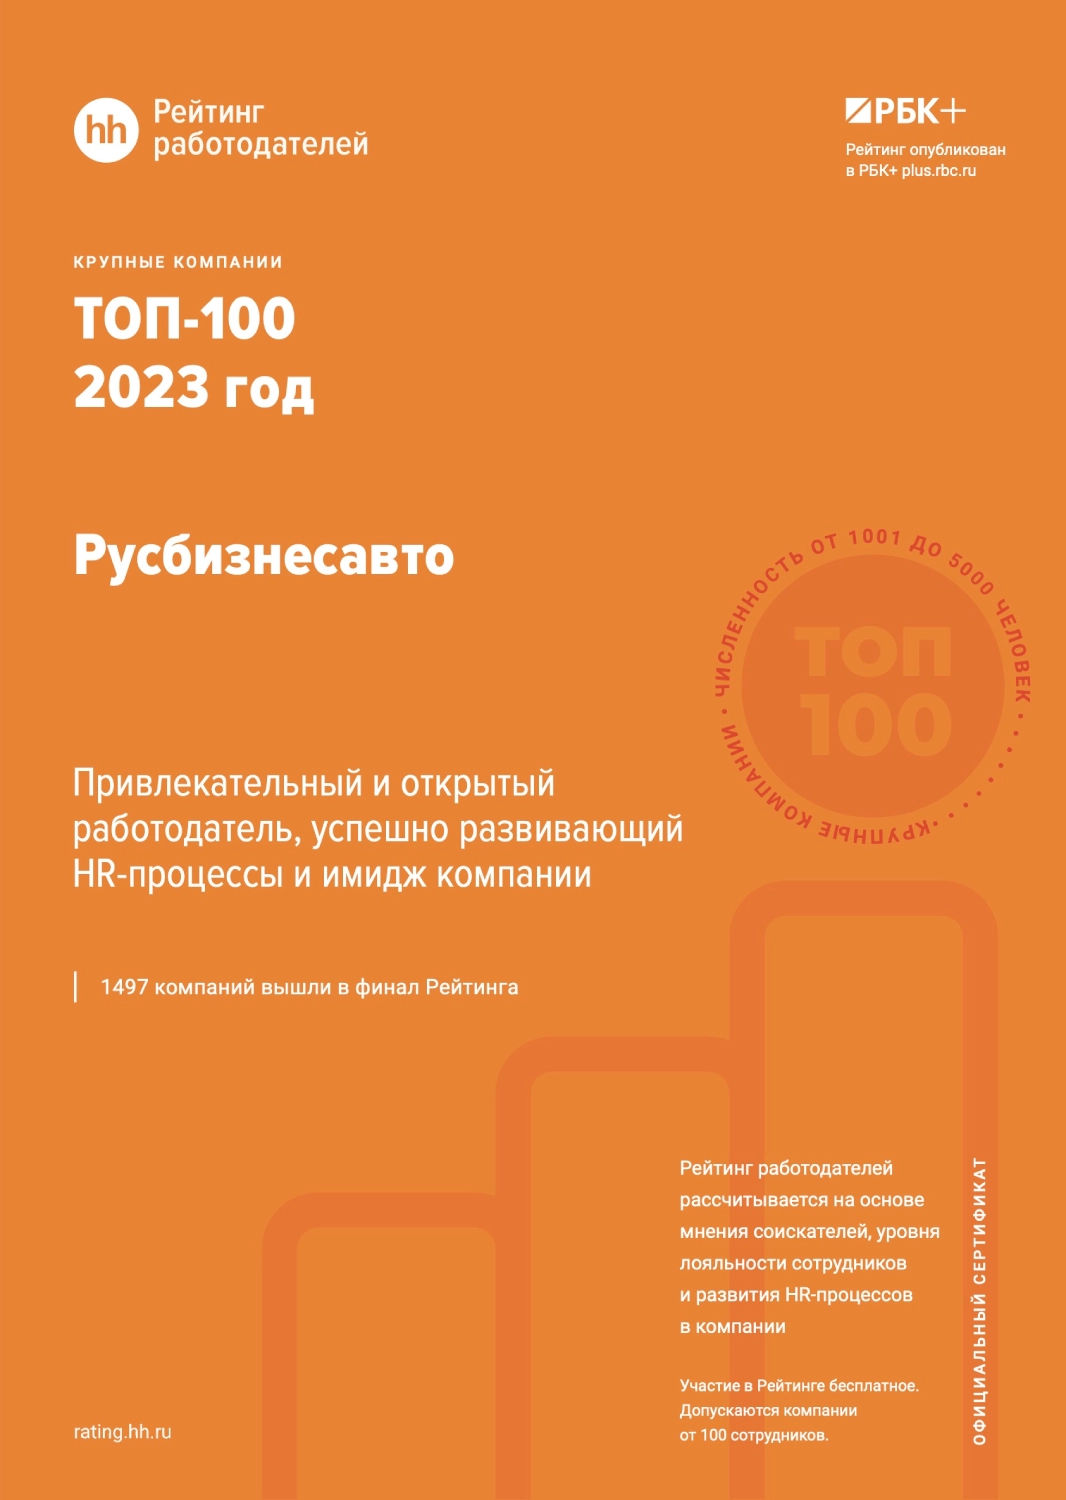 Компания «Русбизнесавто» в ТОП-100 лучших работодателей России - фото rusbiznesavto-v-top-100-luchshih-rabotodatelei-sertifikat-hh.webp